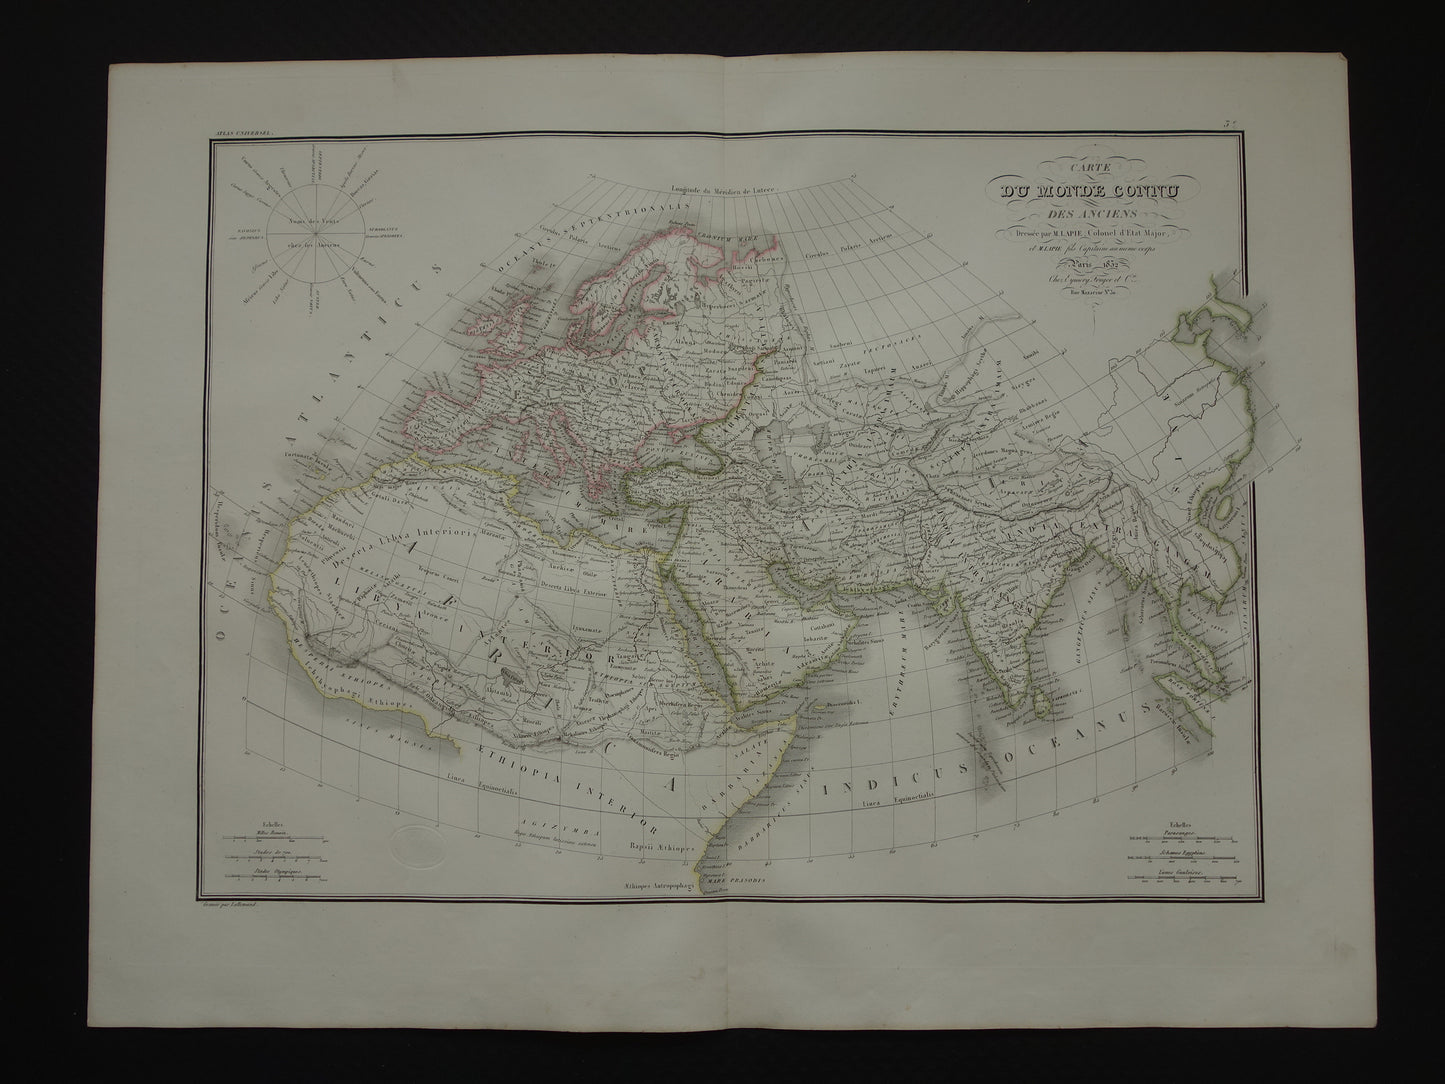 Ptolemaeus oude wereldkaart uit 1832 kaart van de klassieke wereld originele antieke handgekleurde landkaart met jaartal geschiedeniskaart